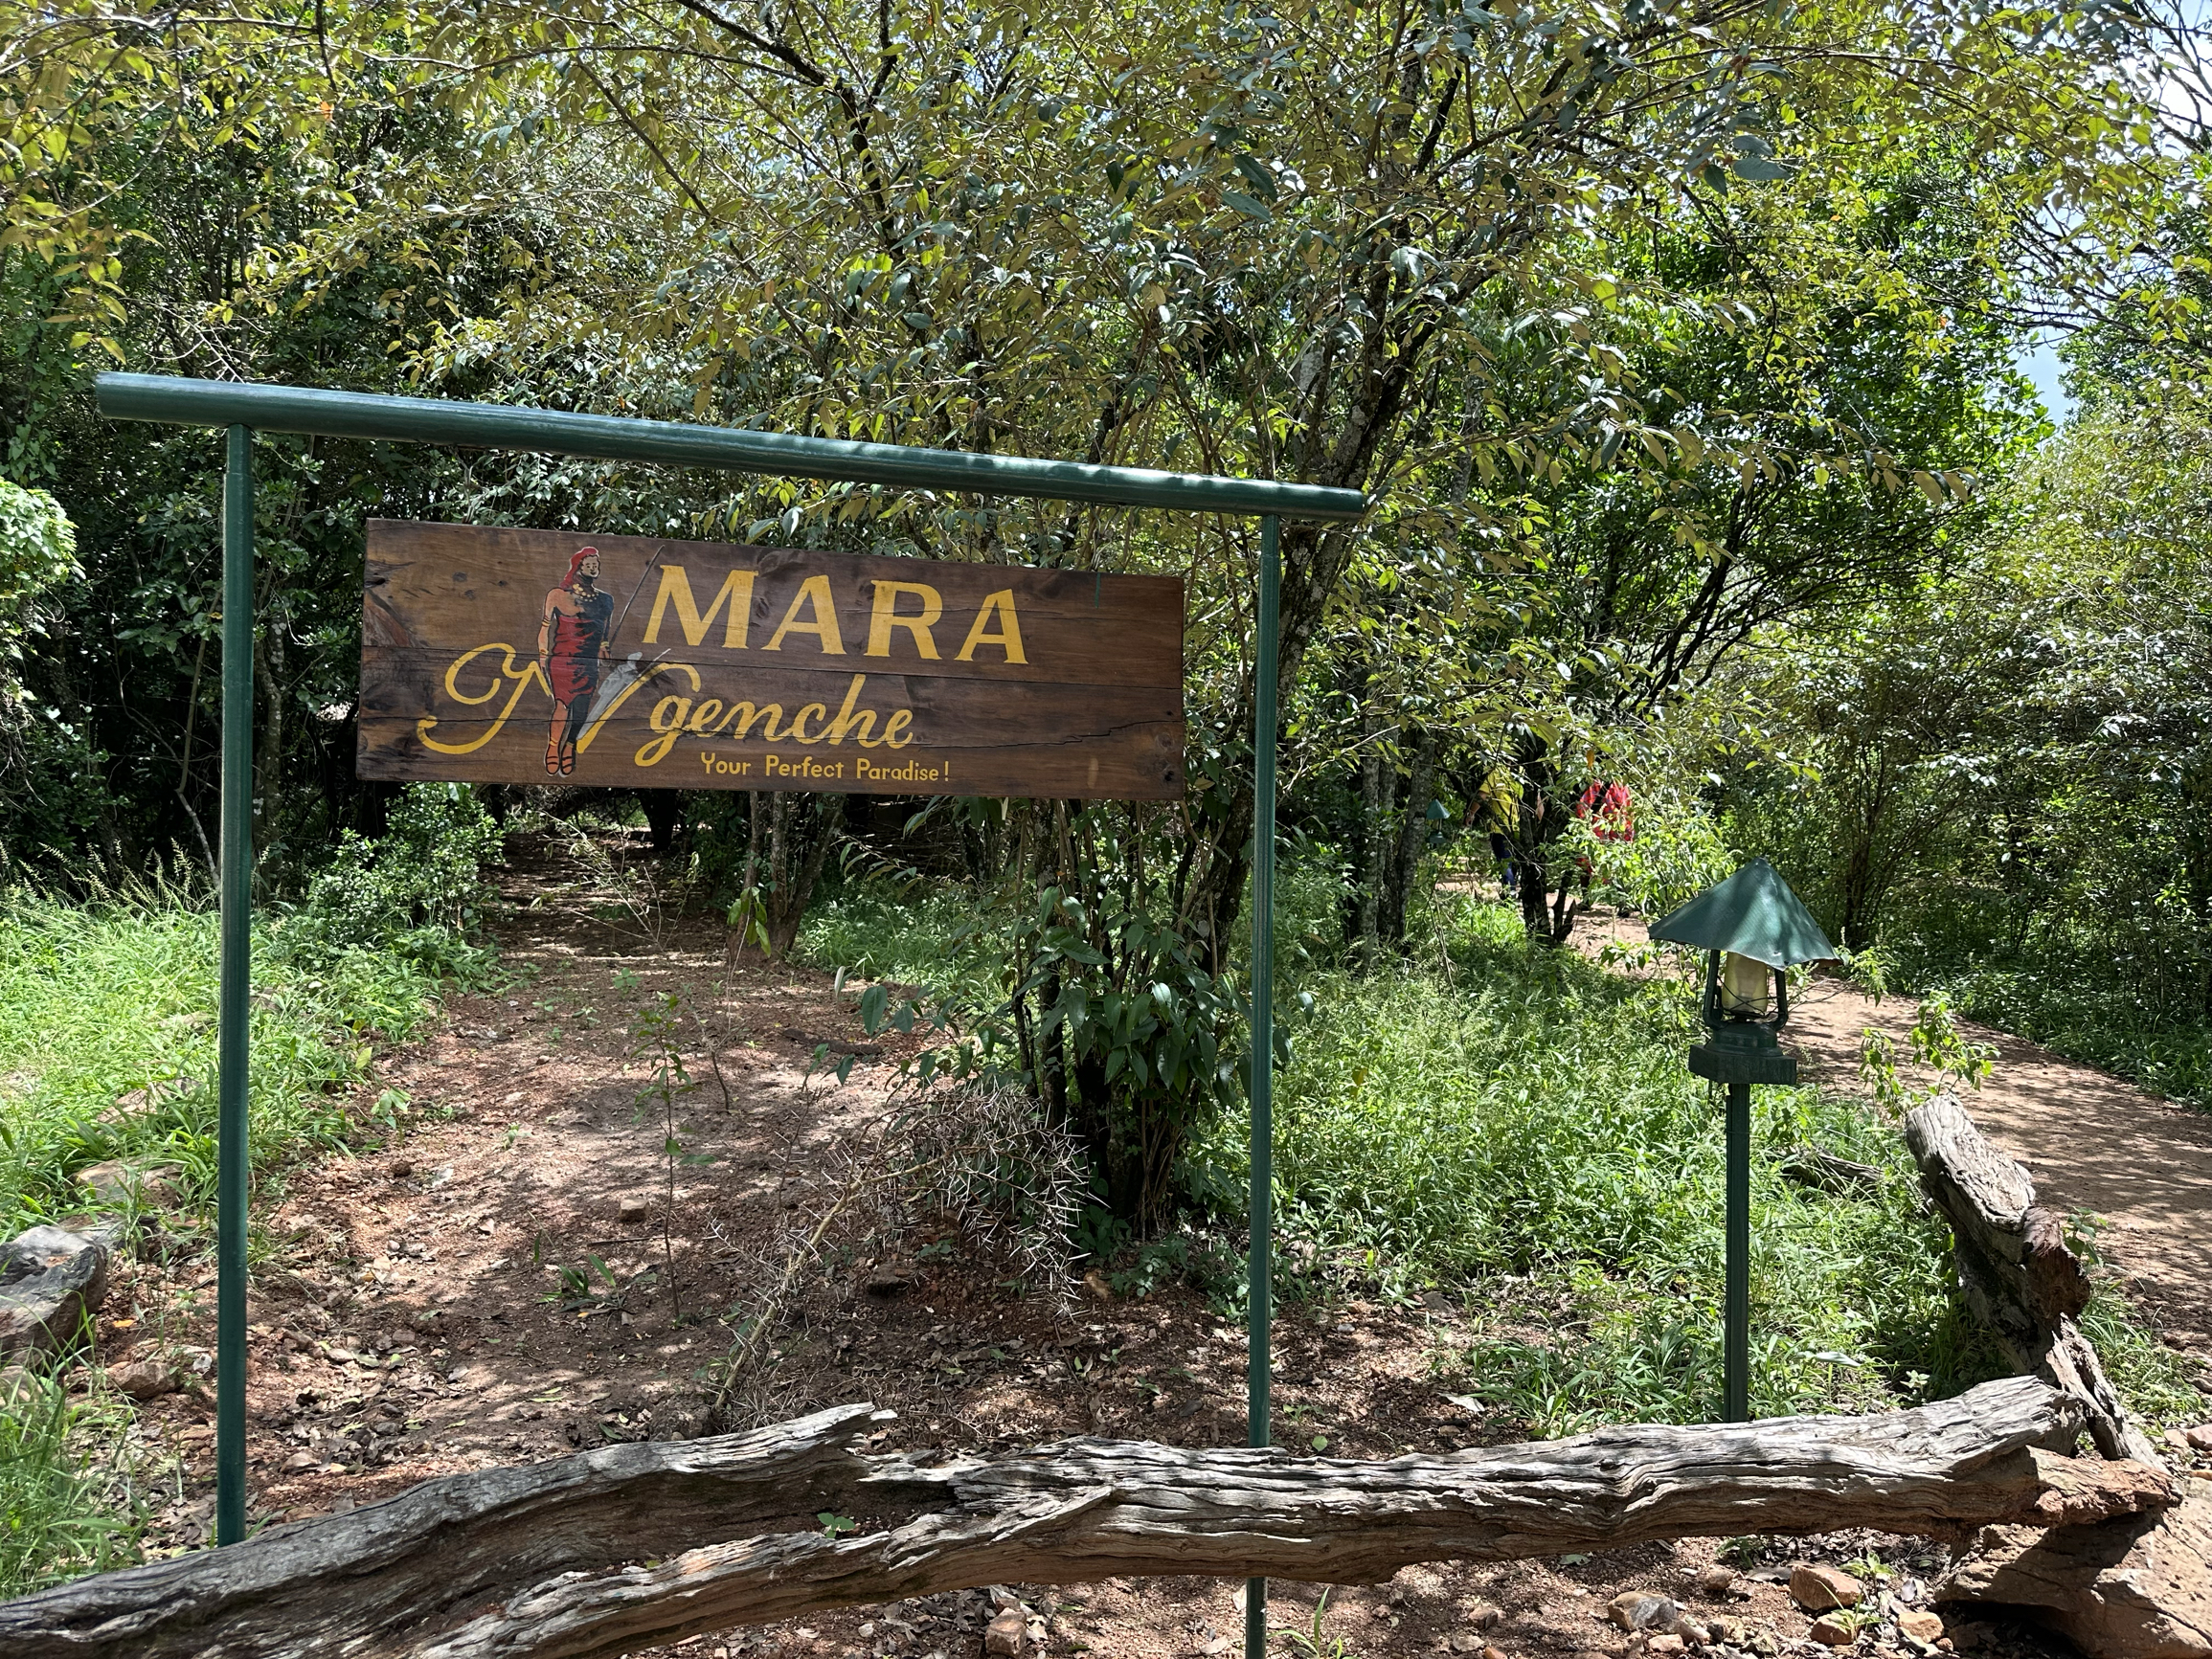 马拉河边的野奢帐篷酒店 Mara Ngenche